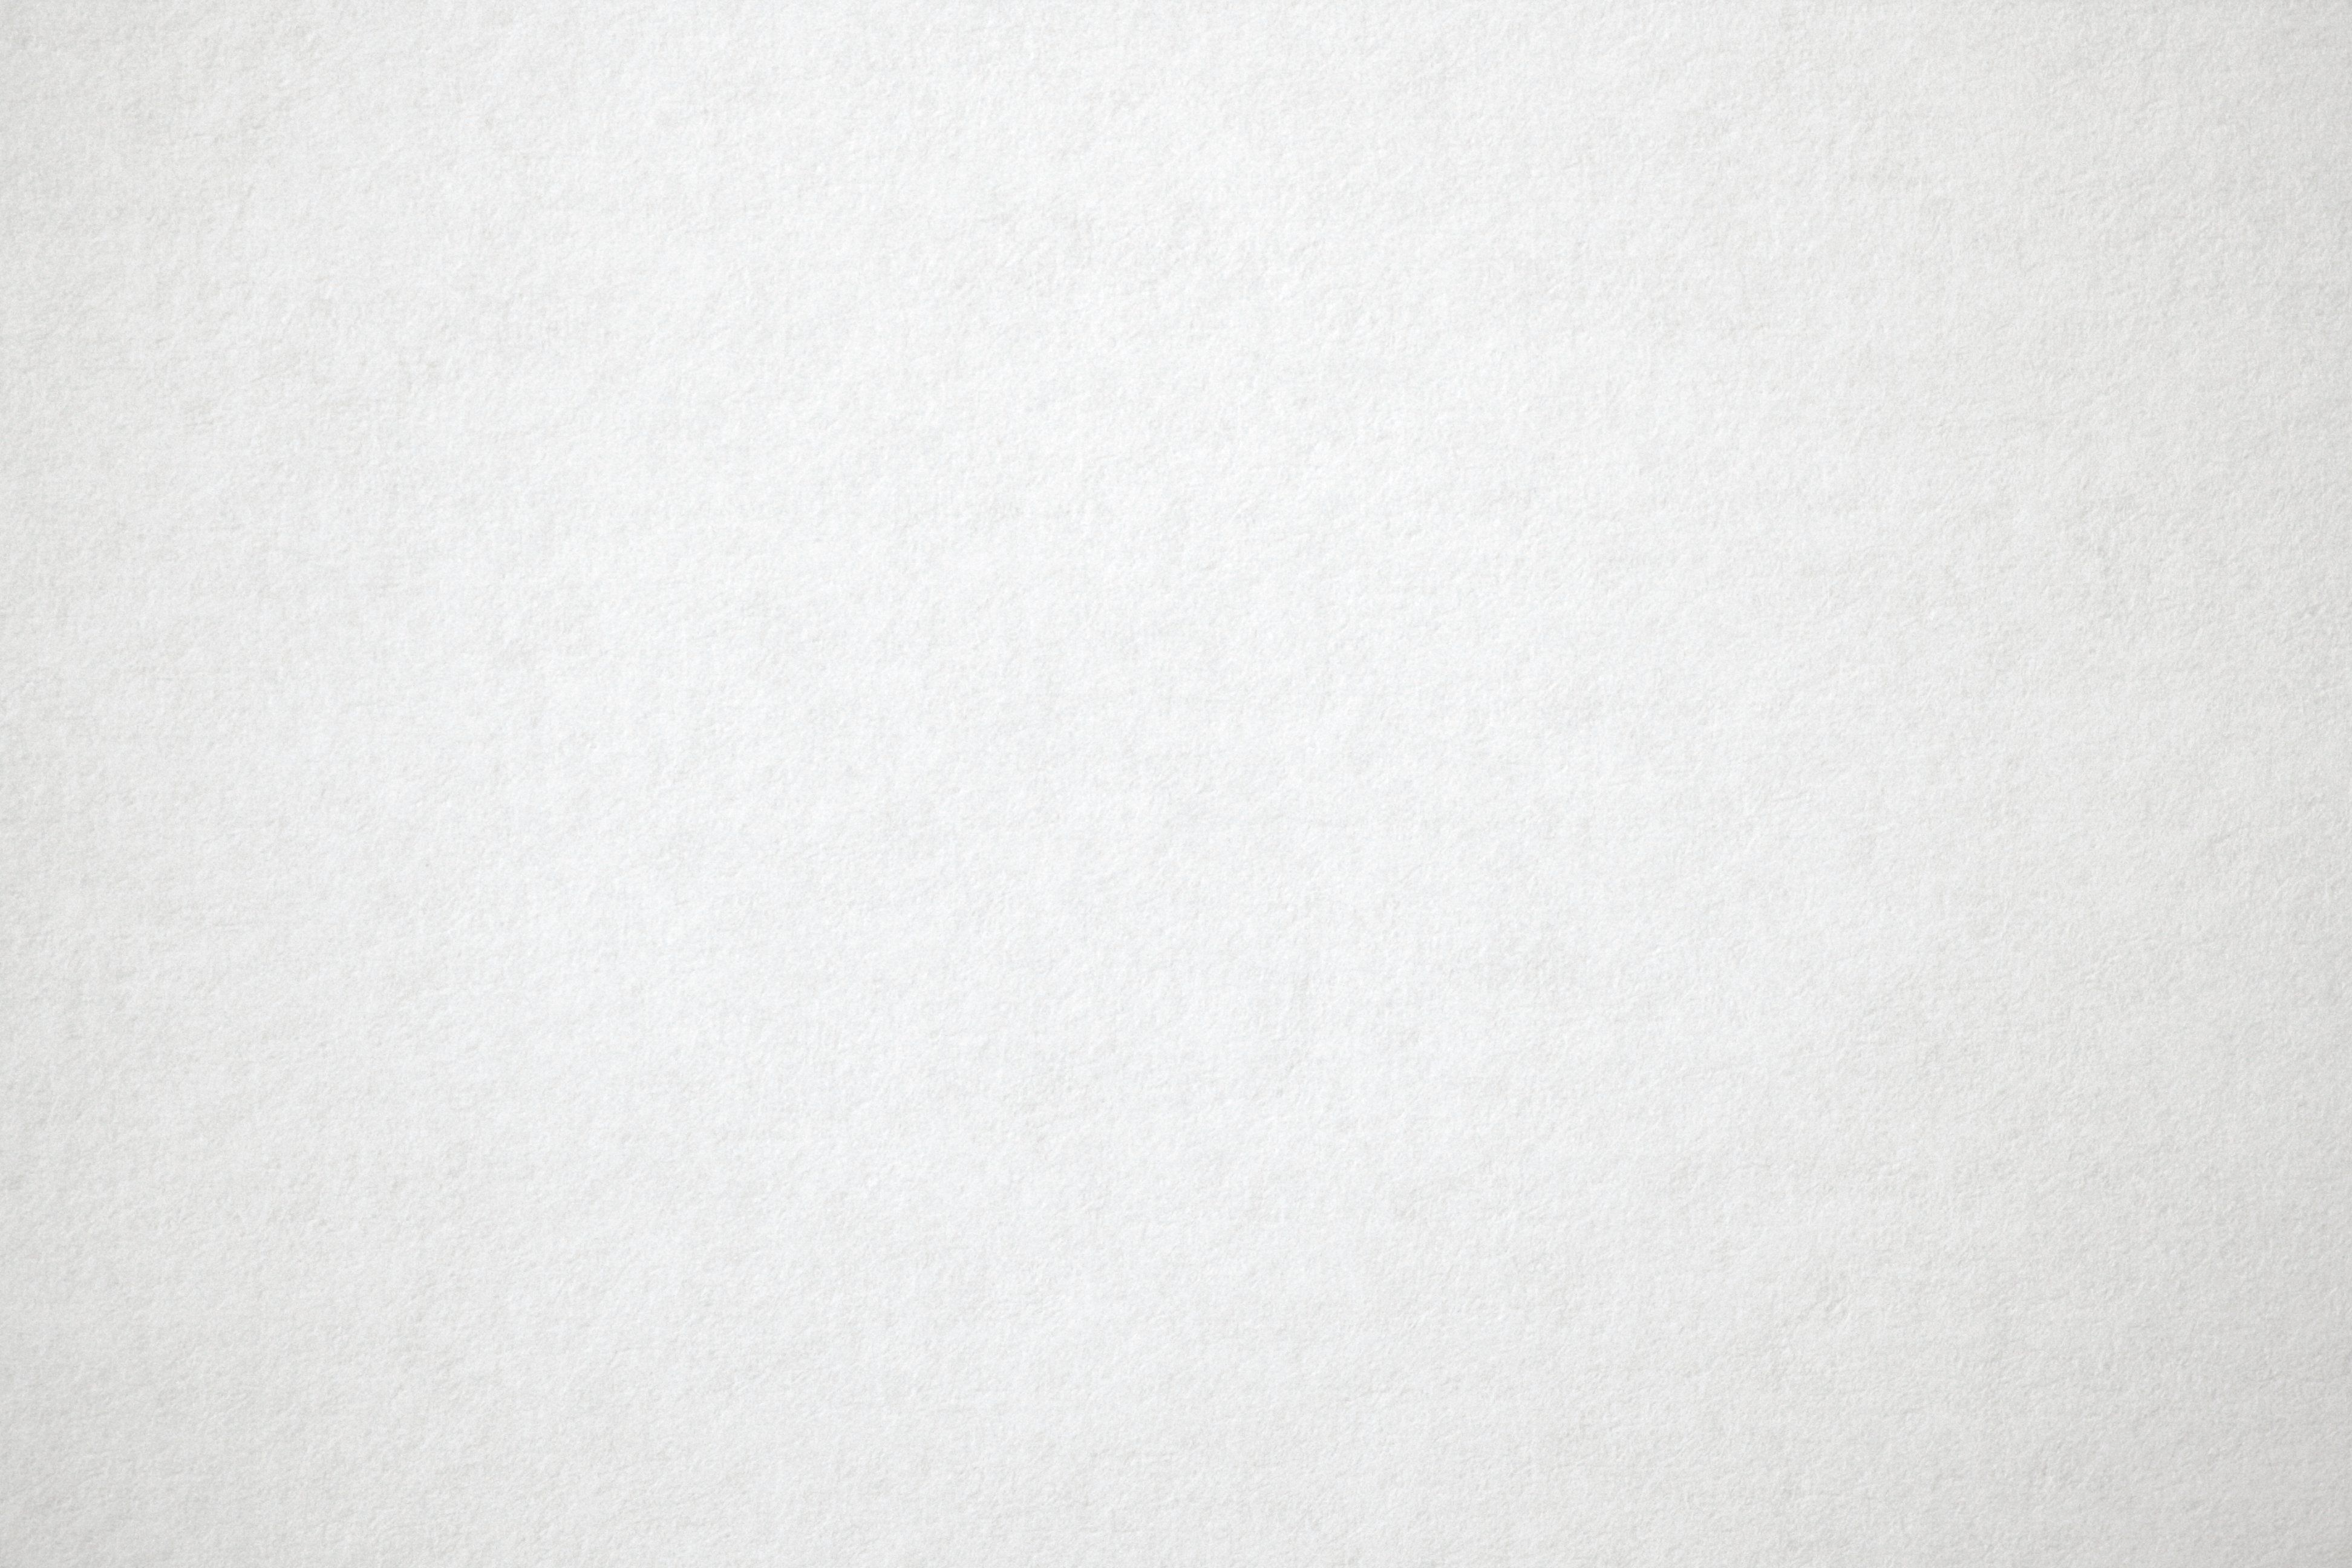 White Paper Texture Picture | Free Photograph | Photos Public Domain ...